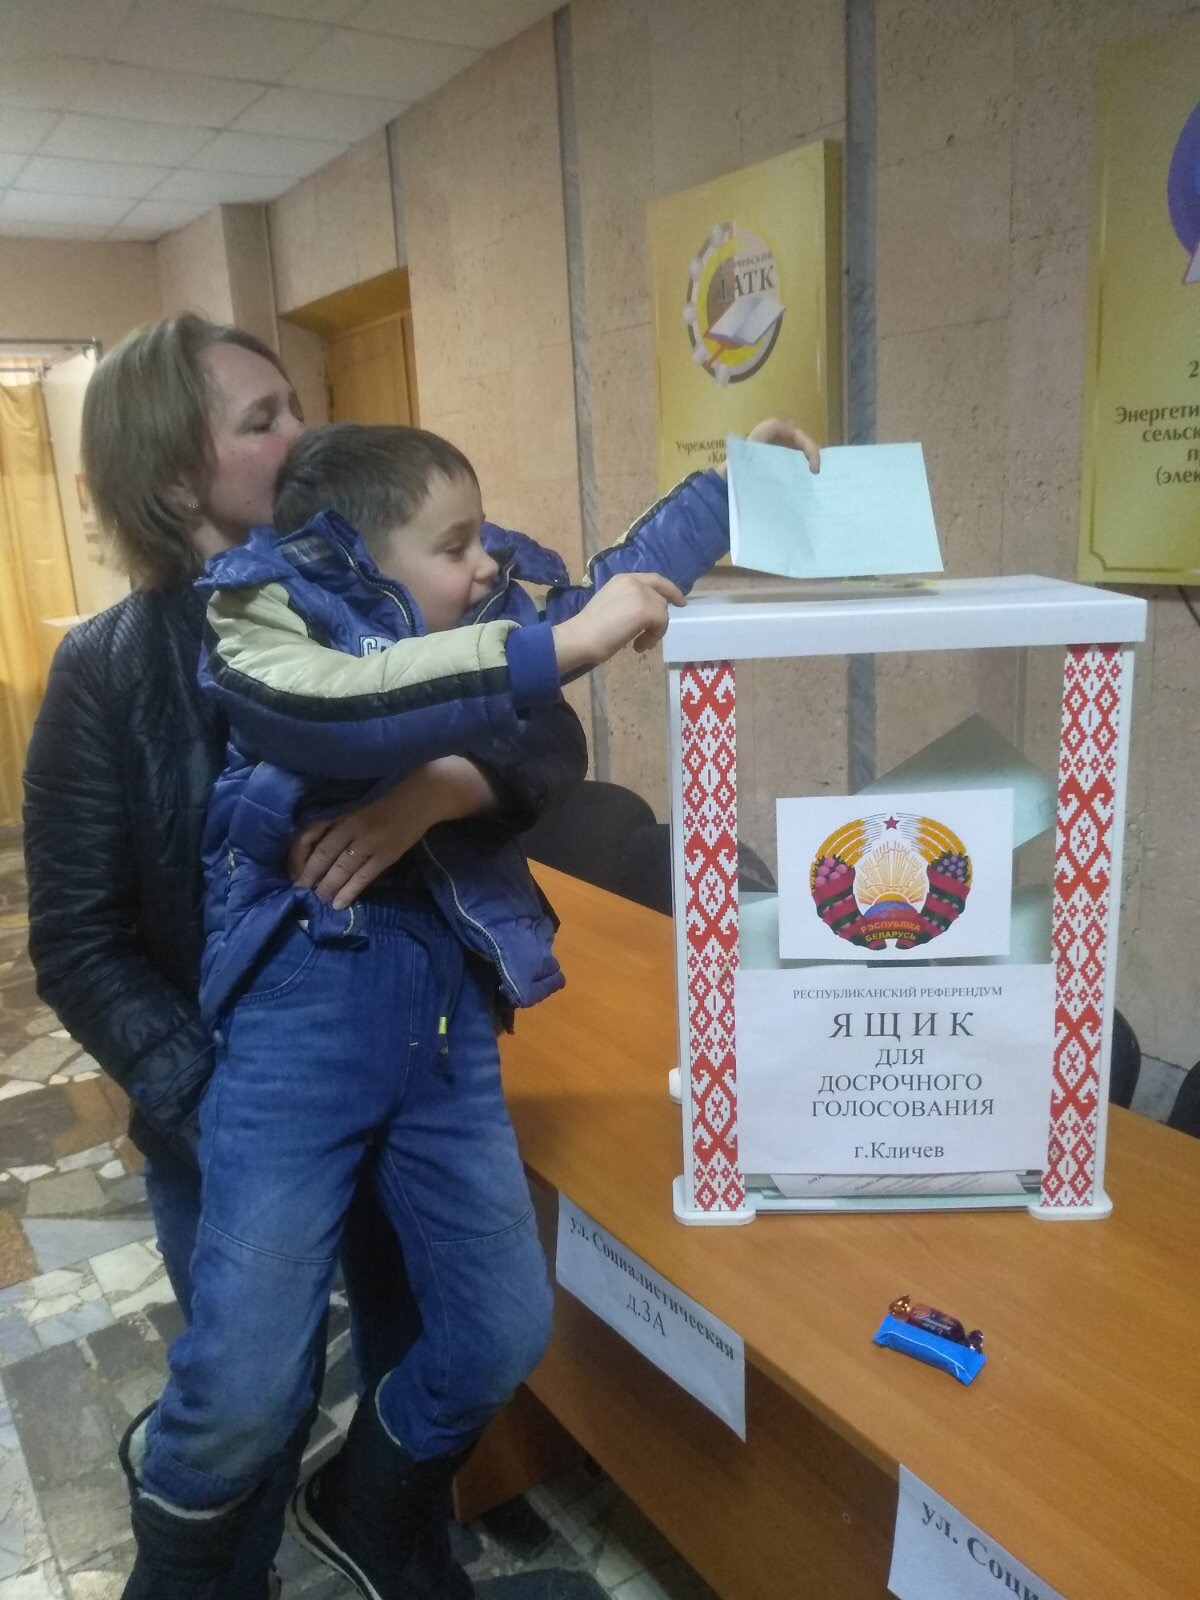 Марина Пирожник: “Я считаю долгом принять участие в голосовании на референдуме”